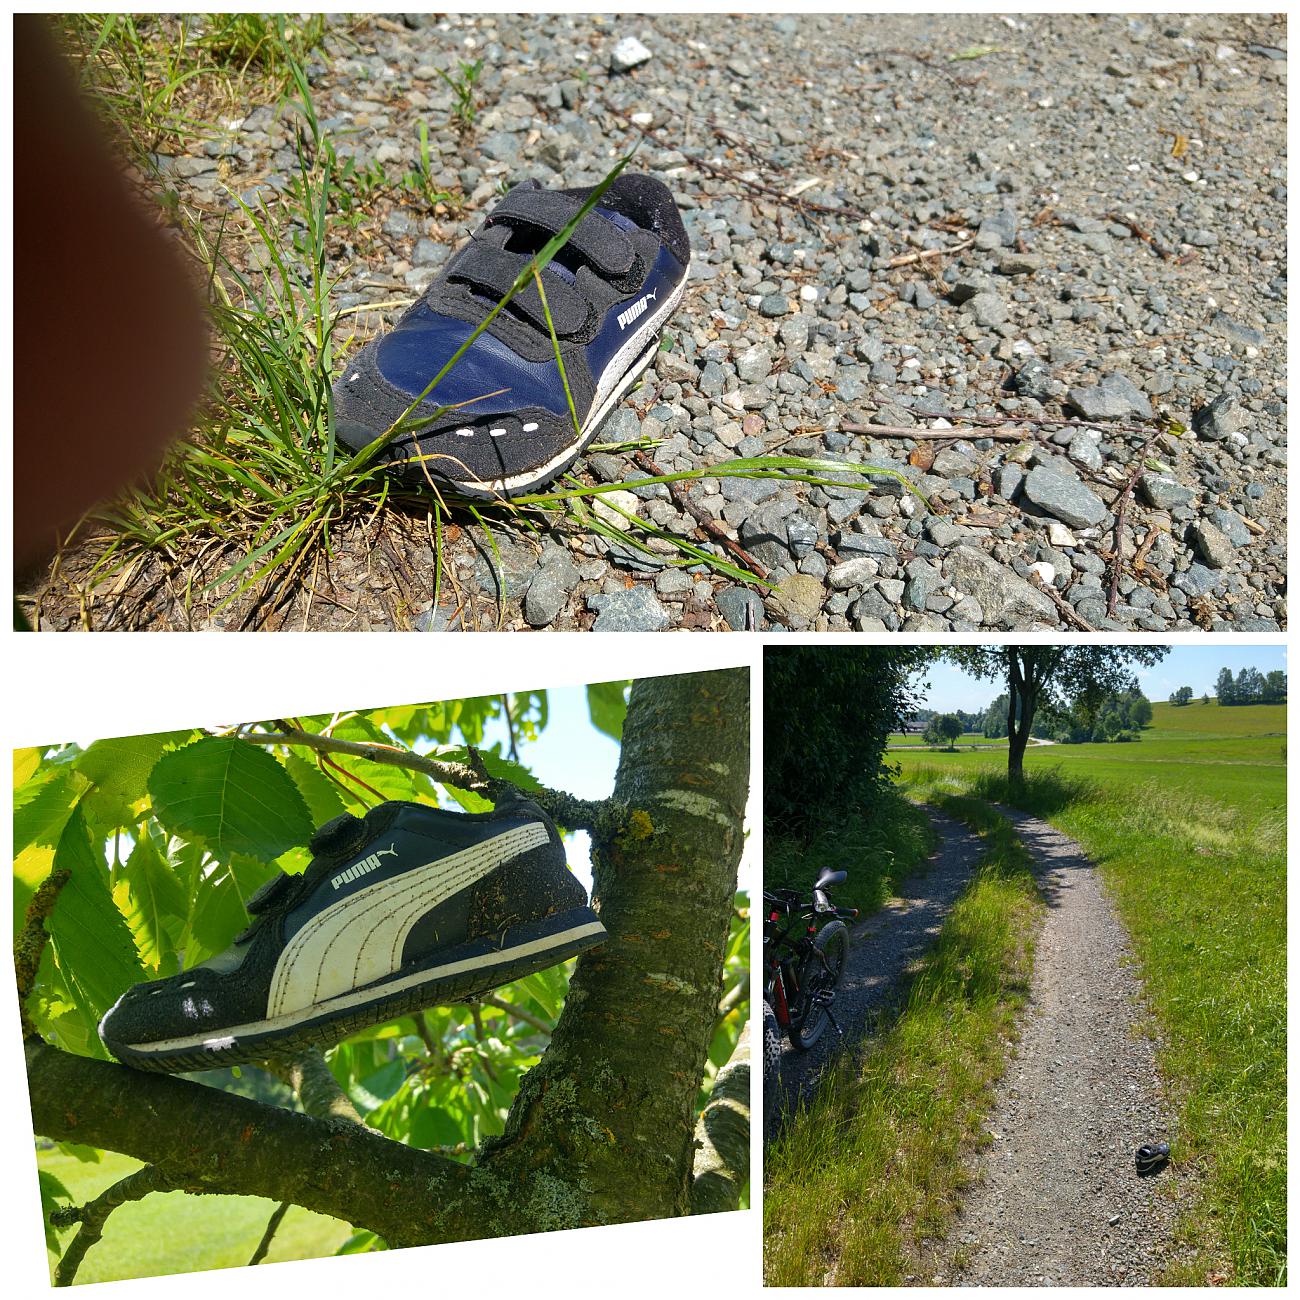 Foto: Martin Zehrer - Kleiner Schuh der Marke Puma zwischen Berndorf und Immenreuth auf einem Feldweg gesehen... Ich hab den Schuh in eine Astgabel am Wegesrand gestellt... 